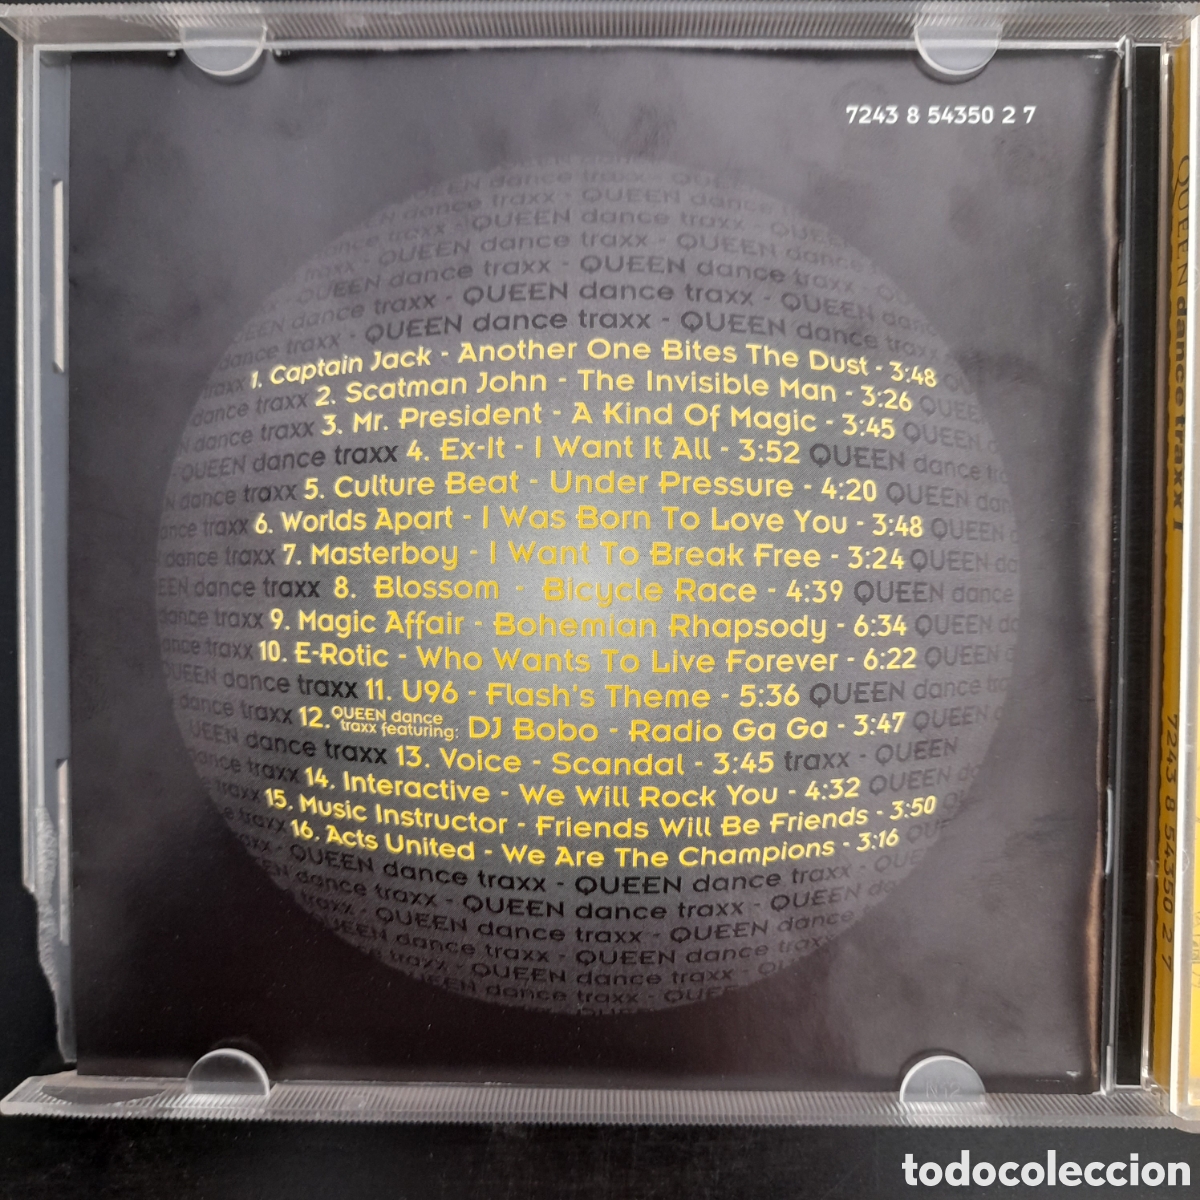 queen dance traxx i (cd, album) - Compra venta en todocoleccion